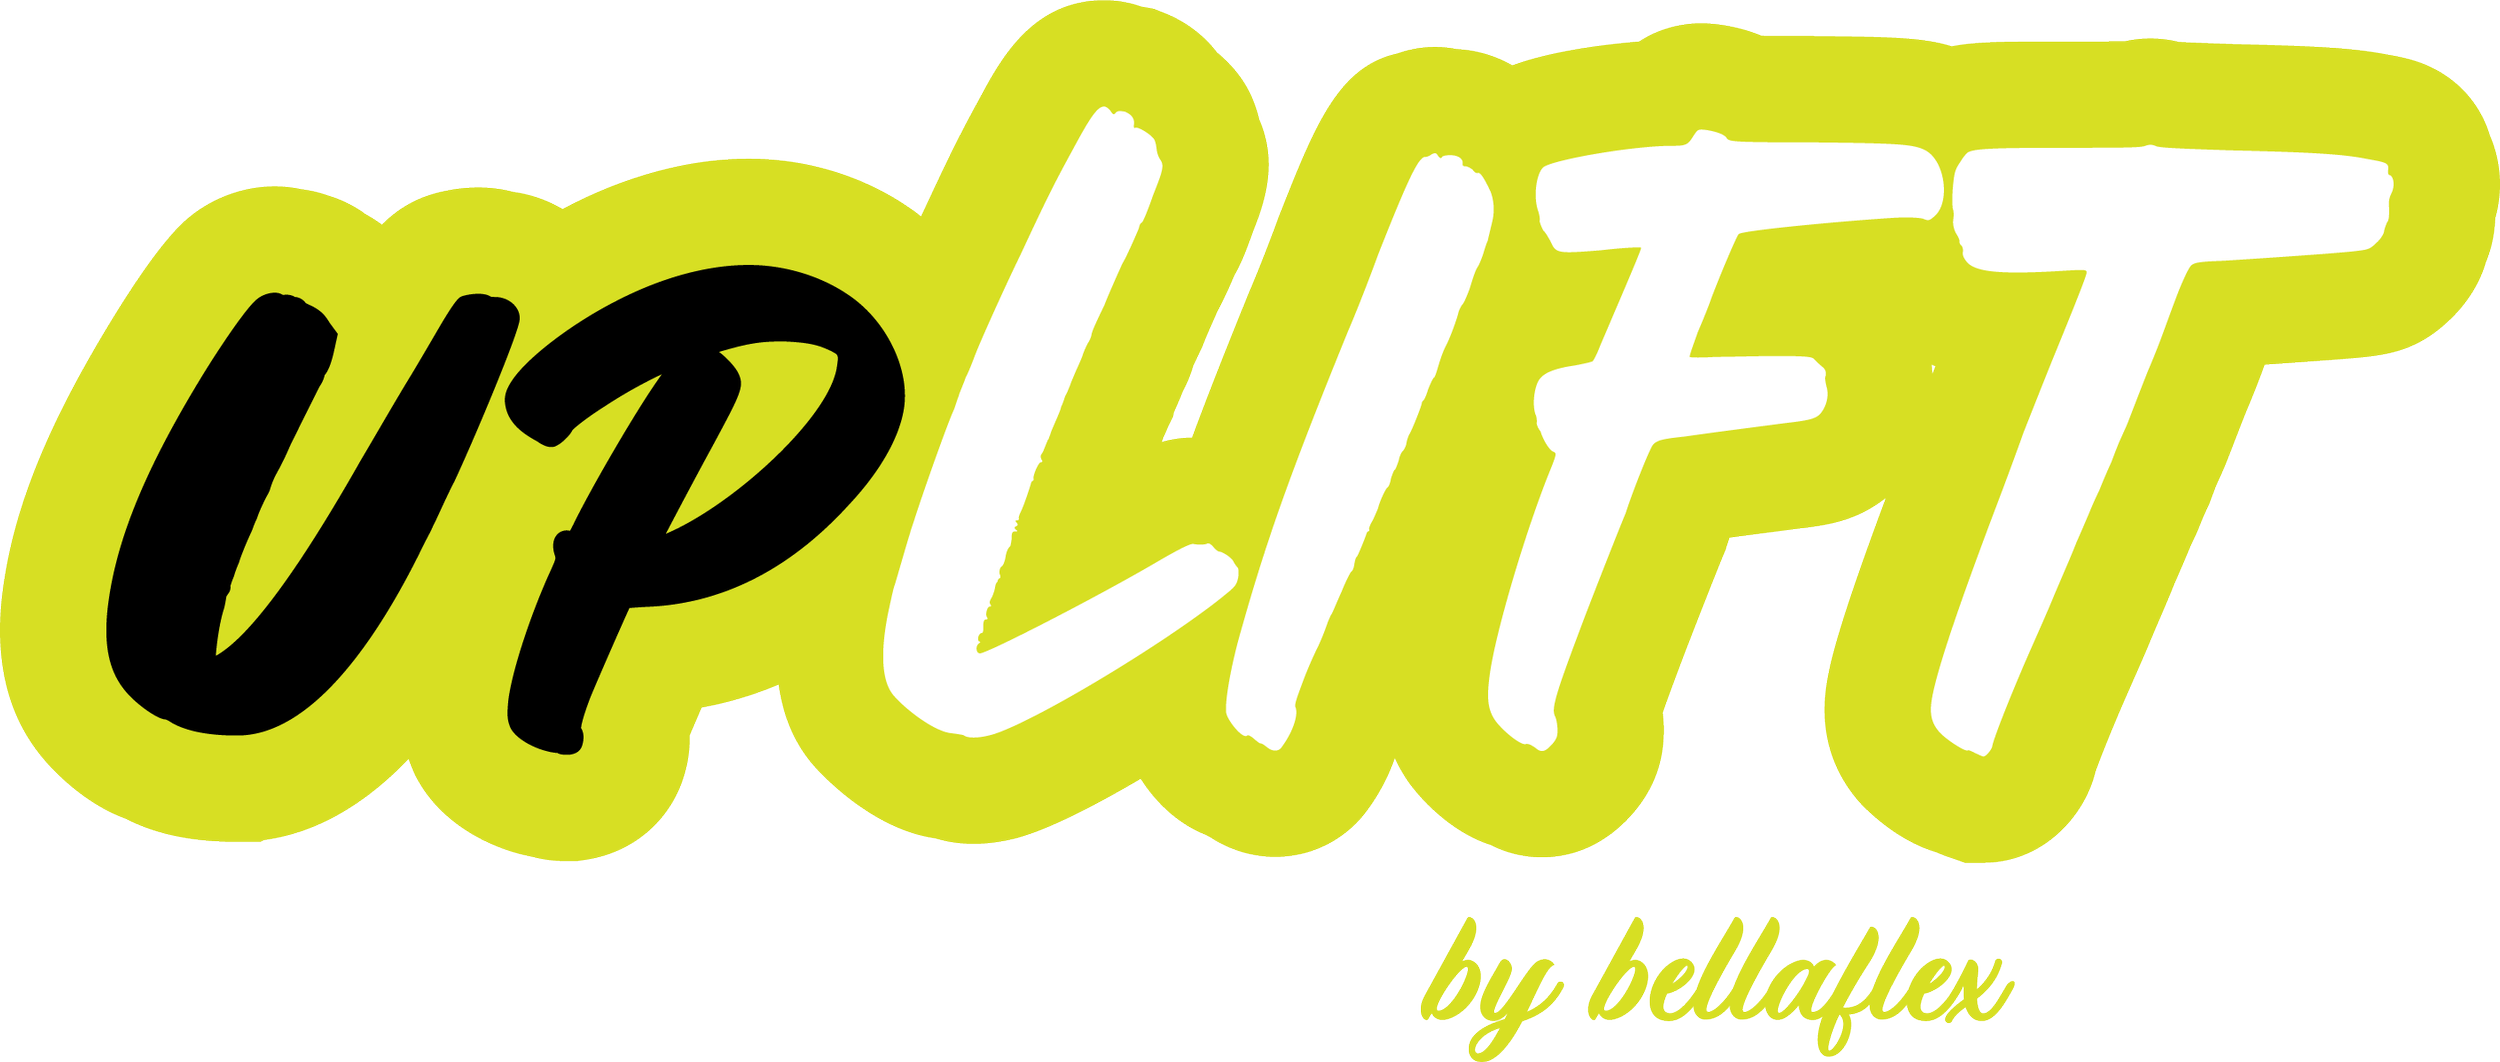 UPLIFT Kettlebell Club-upLIFT Kettlebell Club